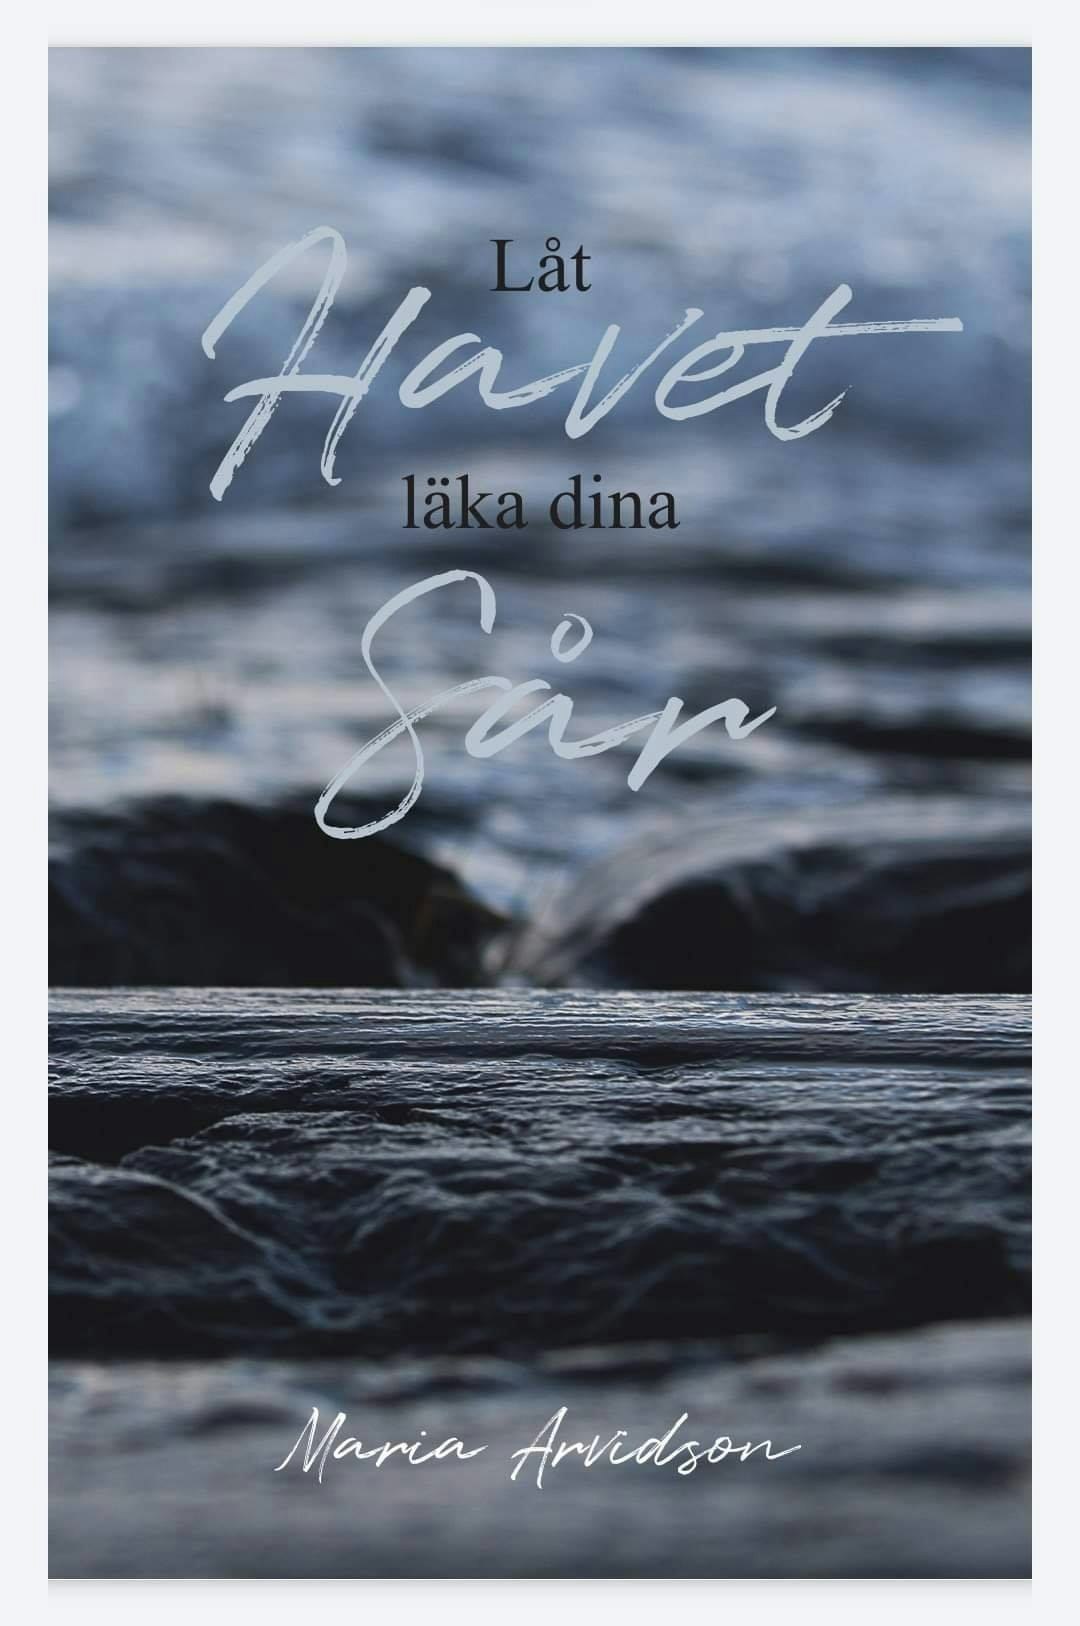 Bok "Låt havet läka dina sår", signerad av författaren Maria Arvidsson